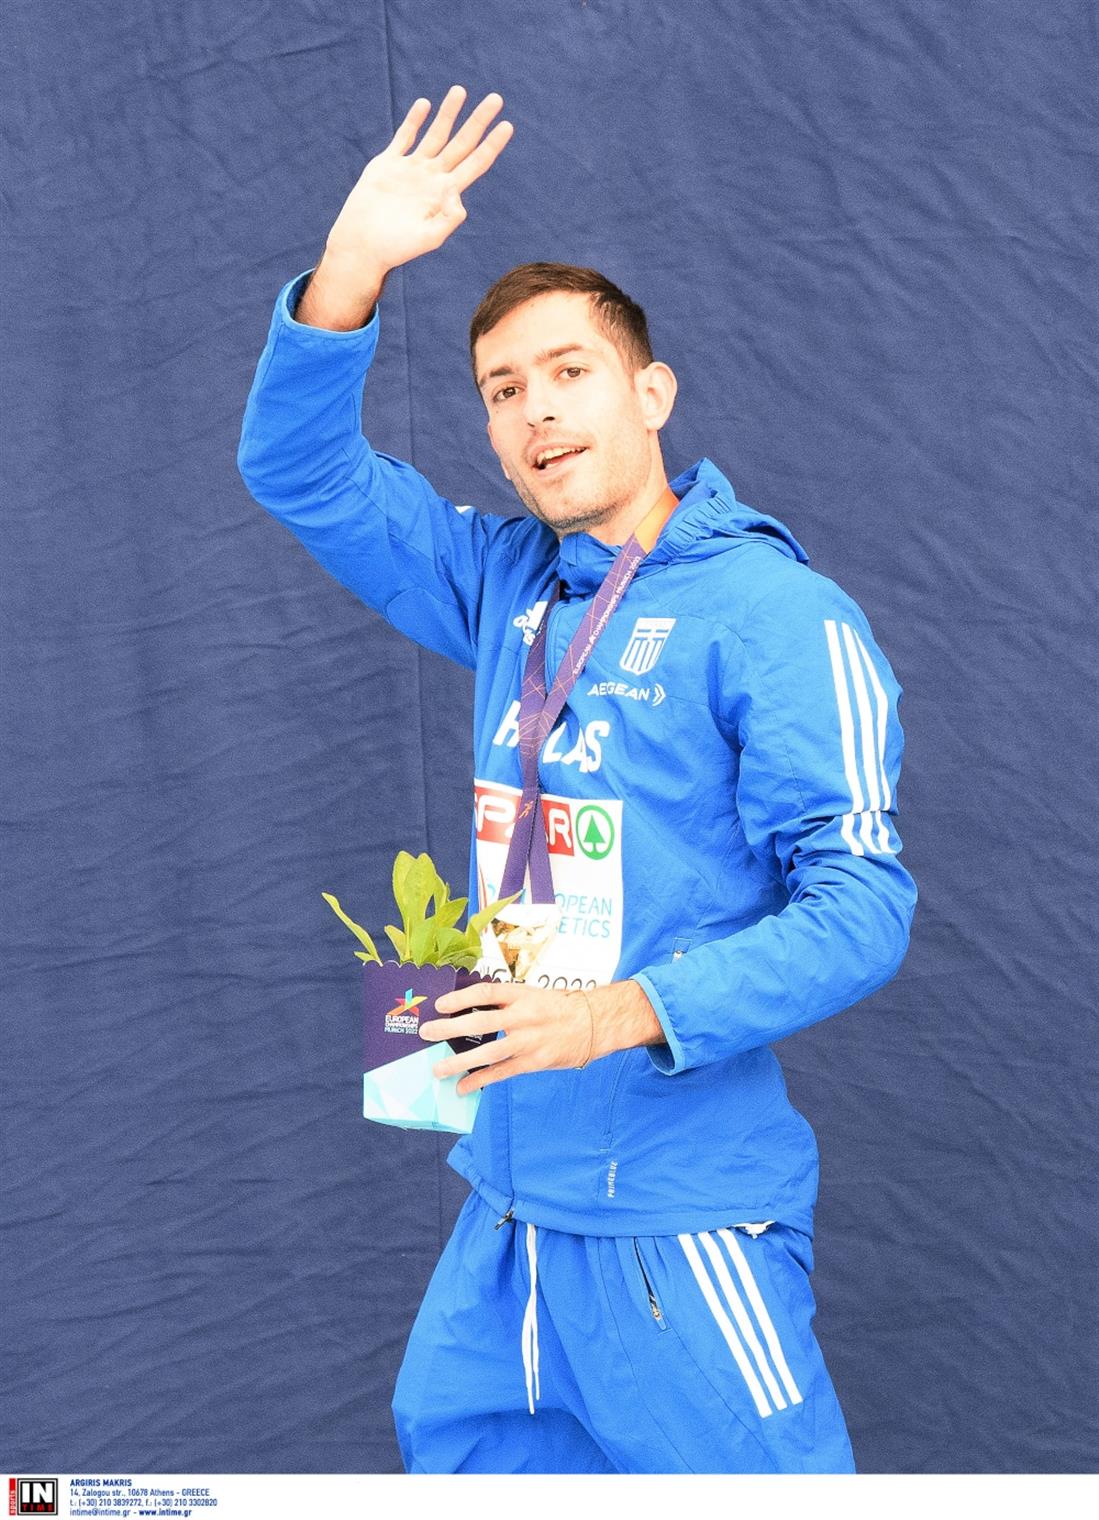 Τεντόγλου - Ευρωπαικό Πρωτάθλημα Στίβου - χρυσό μετάλλιο